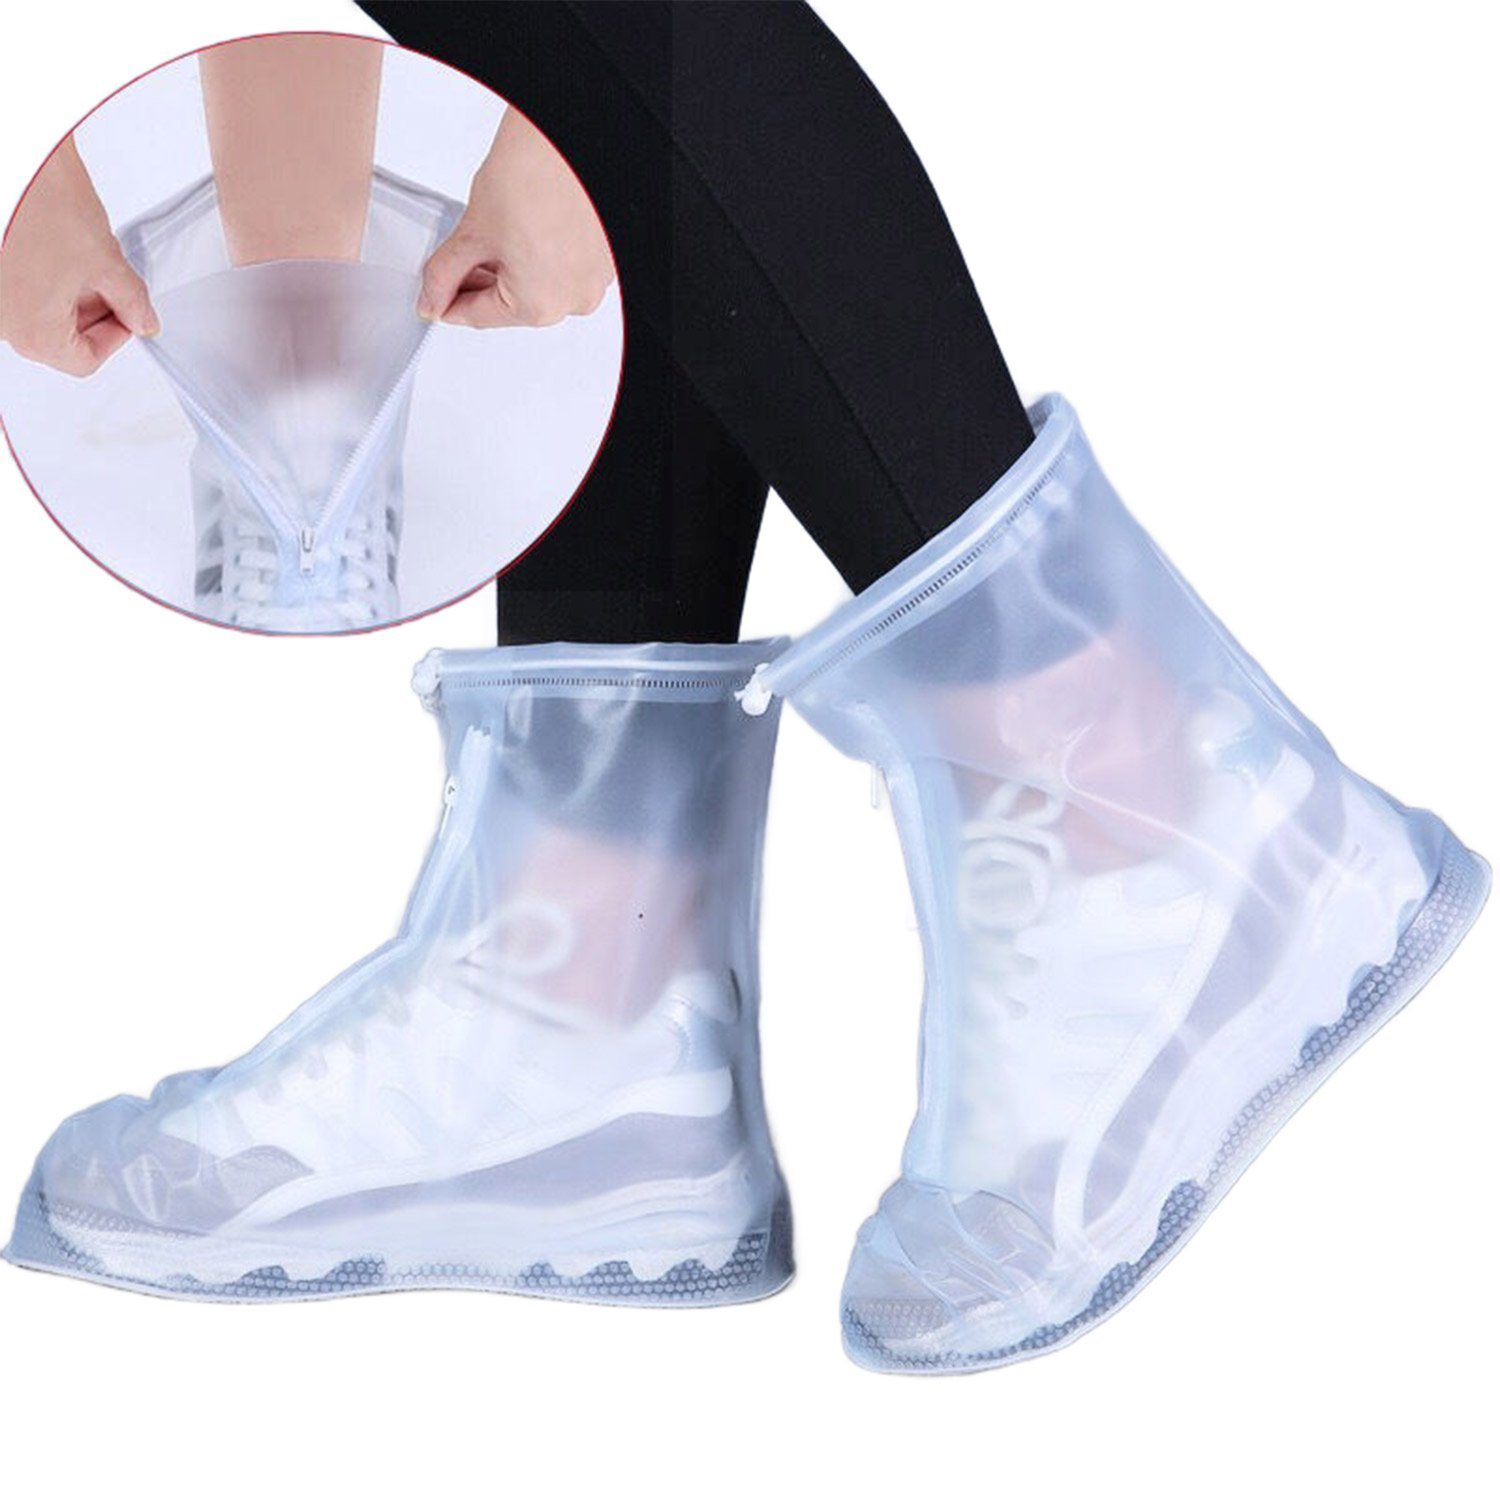 Daisred Schuhüberzieher Wasserdicht Regenschutz Überzieher Schuhe Weiß | Schuhüberzieher